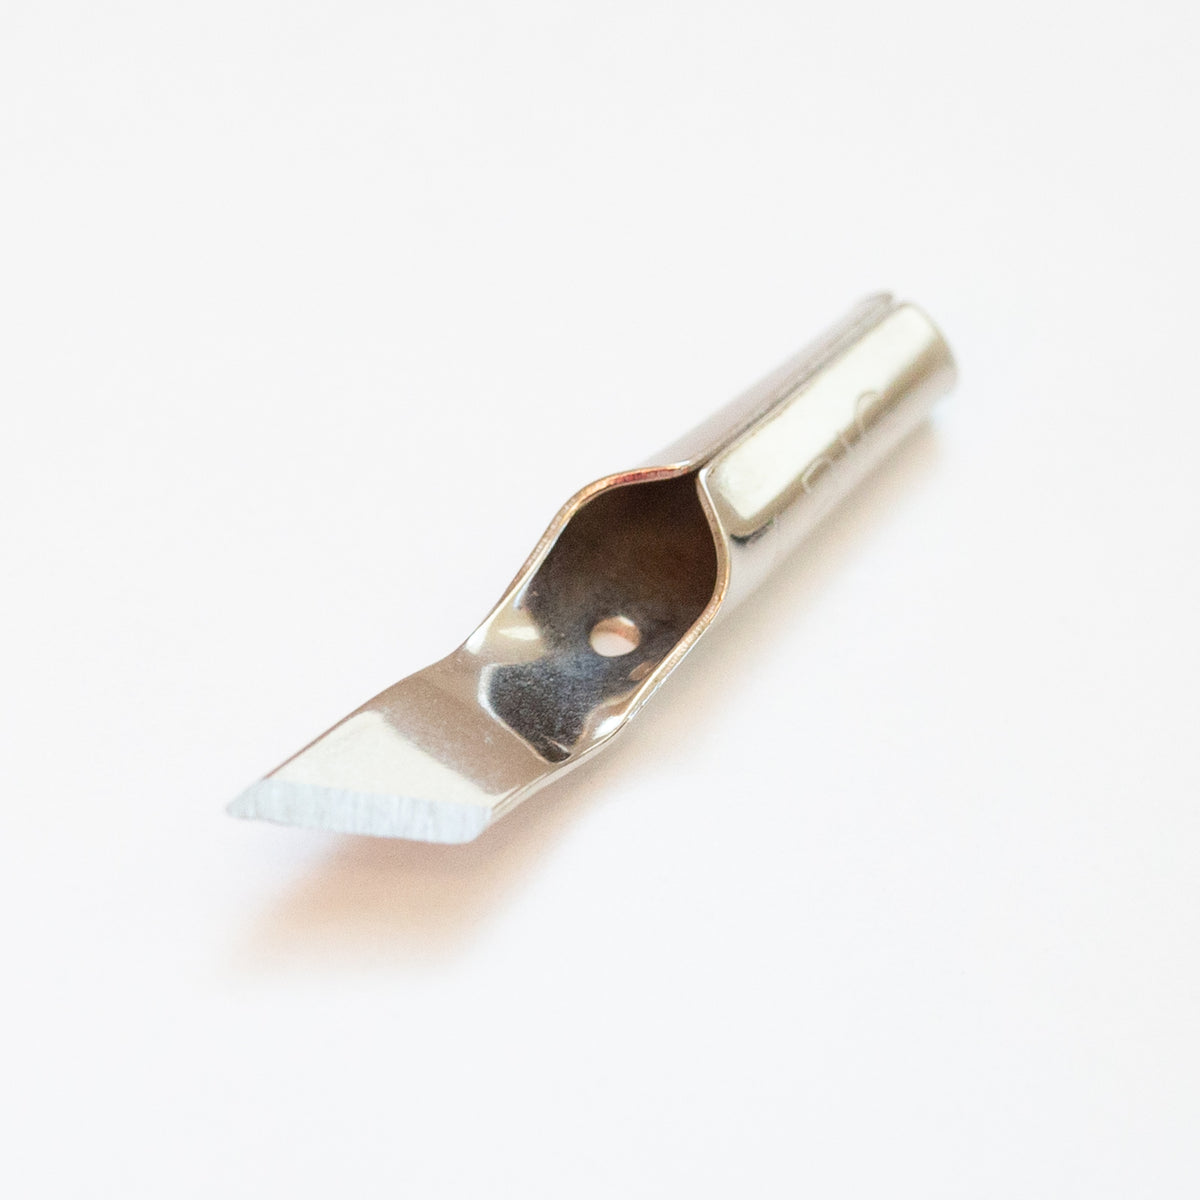 Abig-Messer für scharfe Kanten